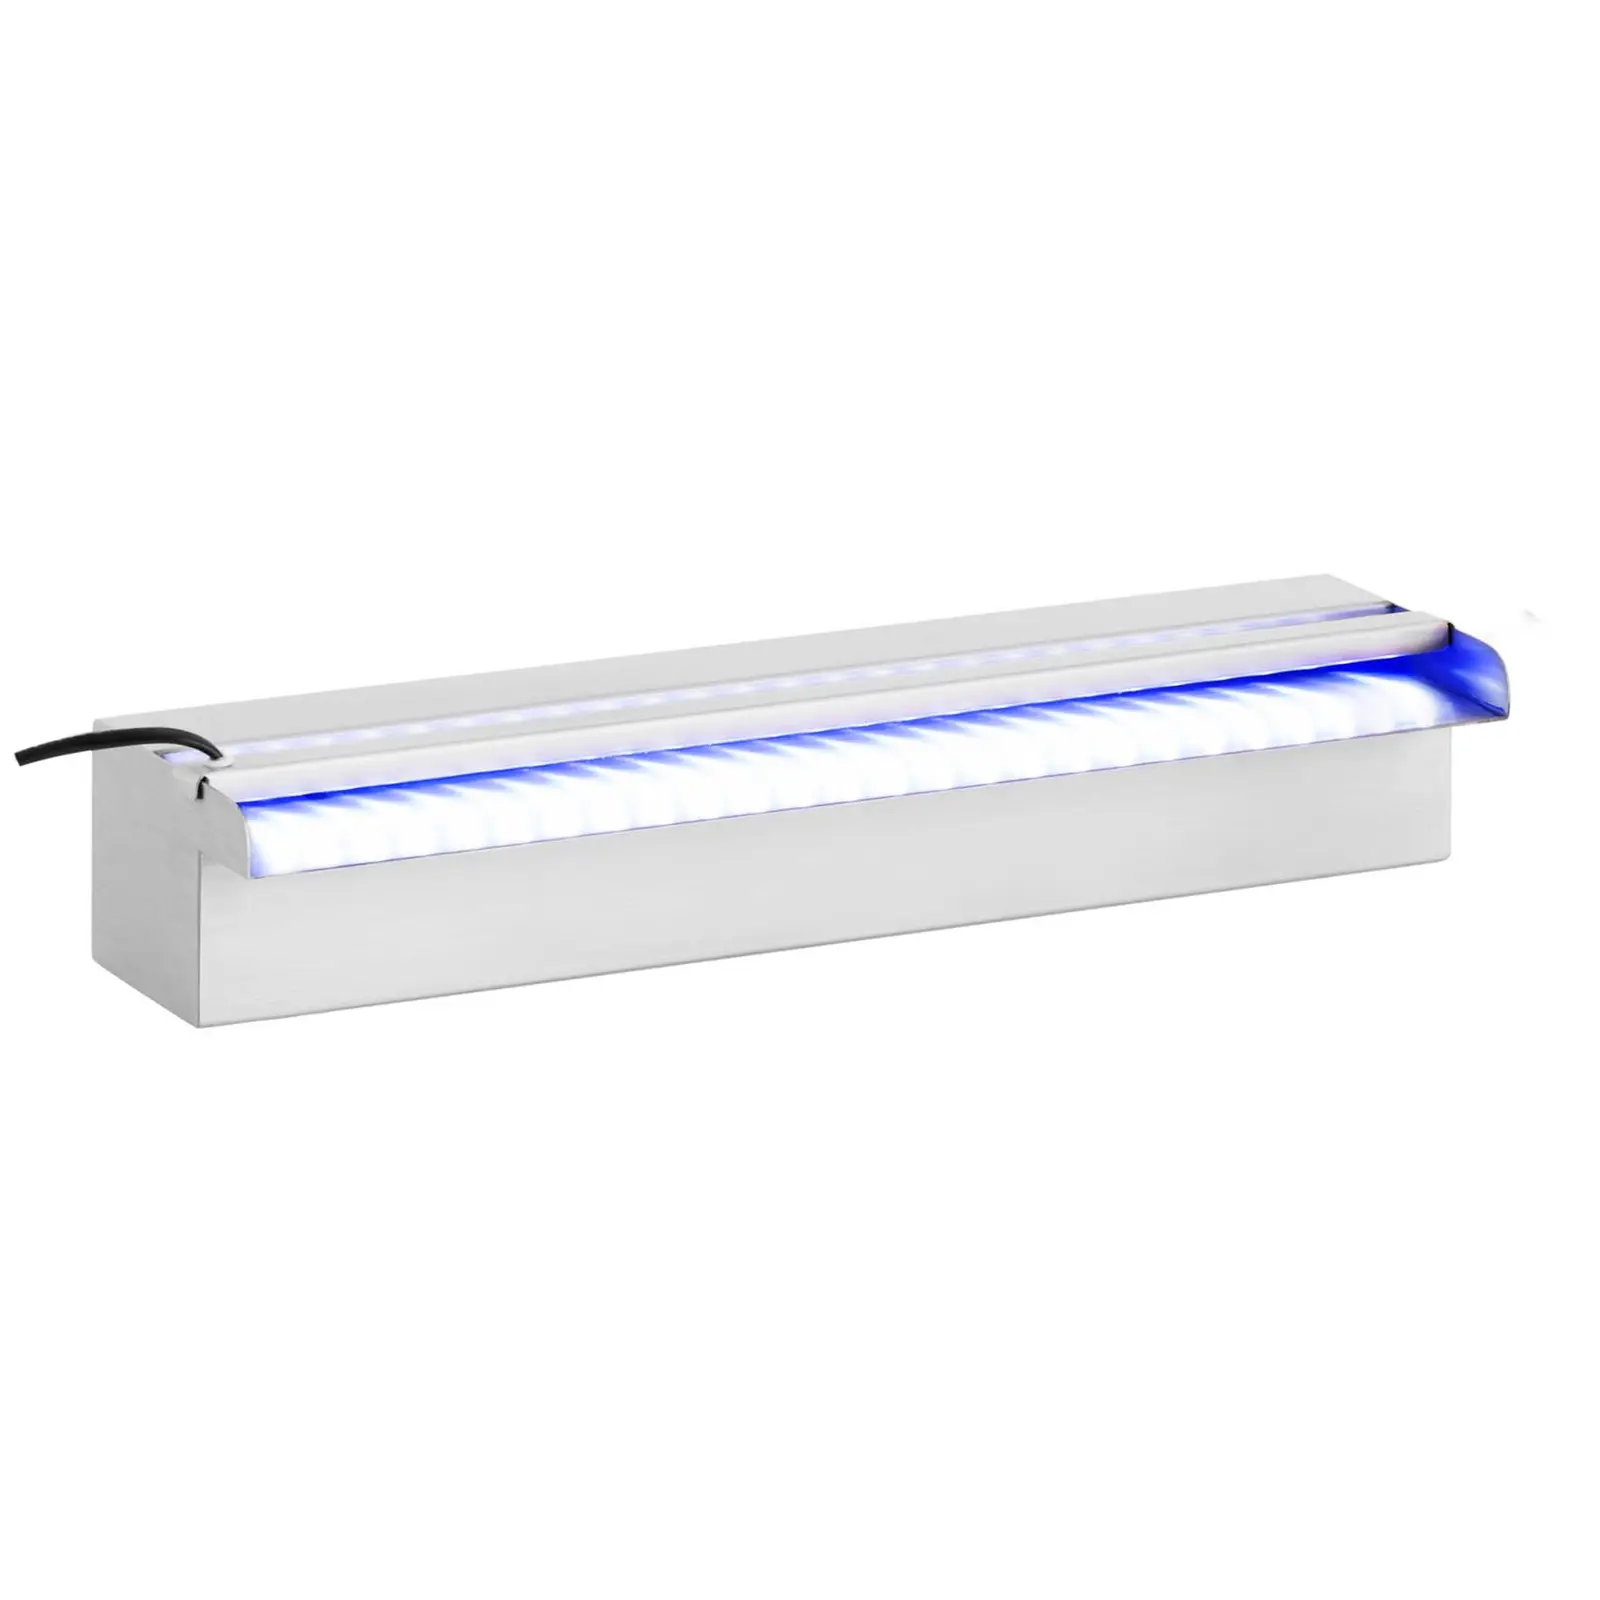 Water Spillway - 45 cm - LED lighting